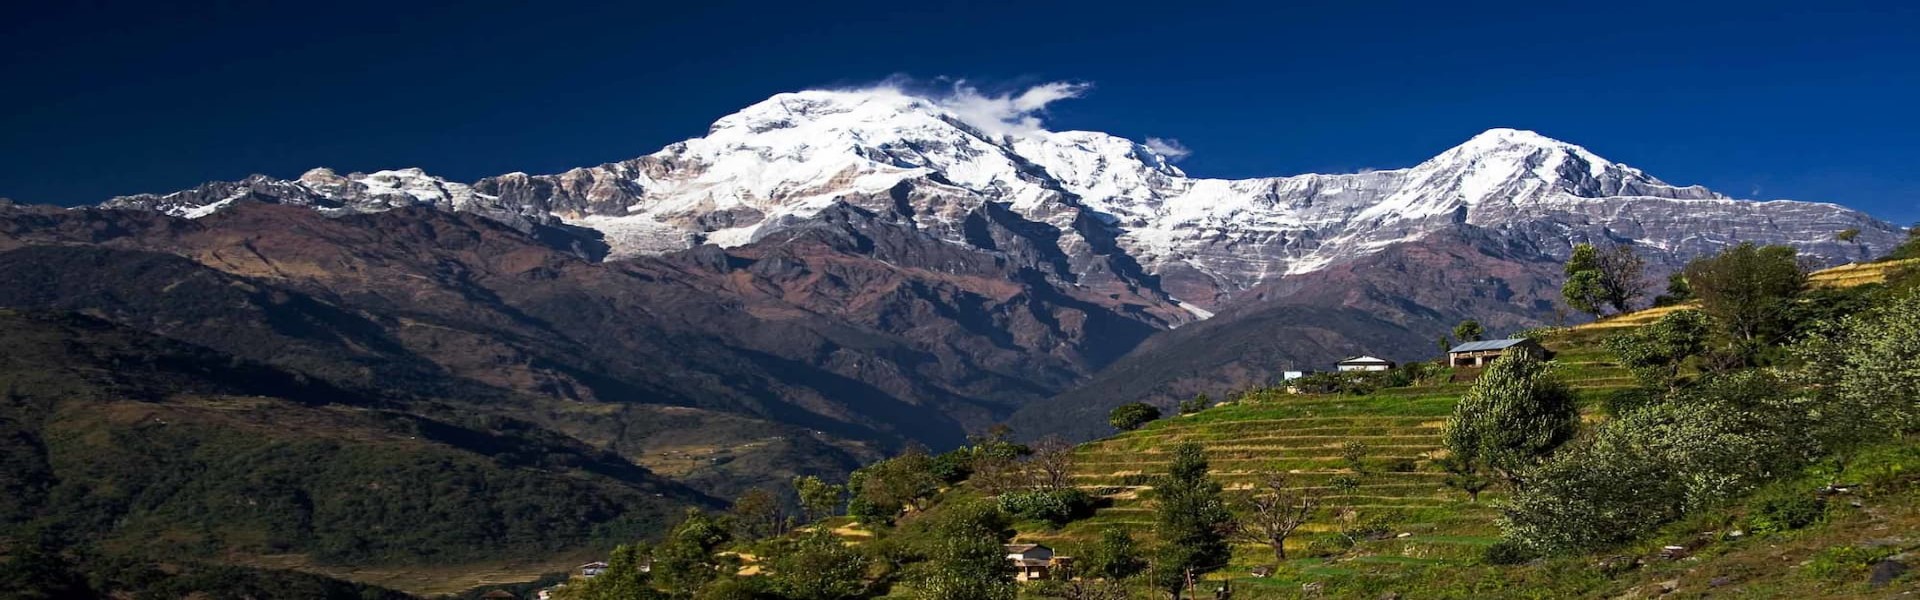 Viewpoints Trek in Nepal